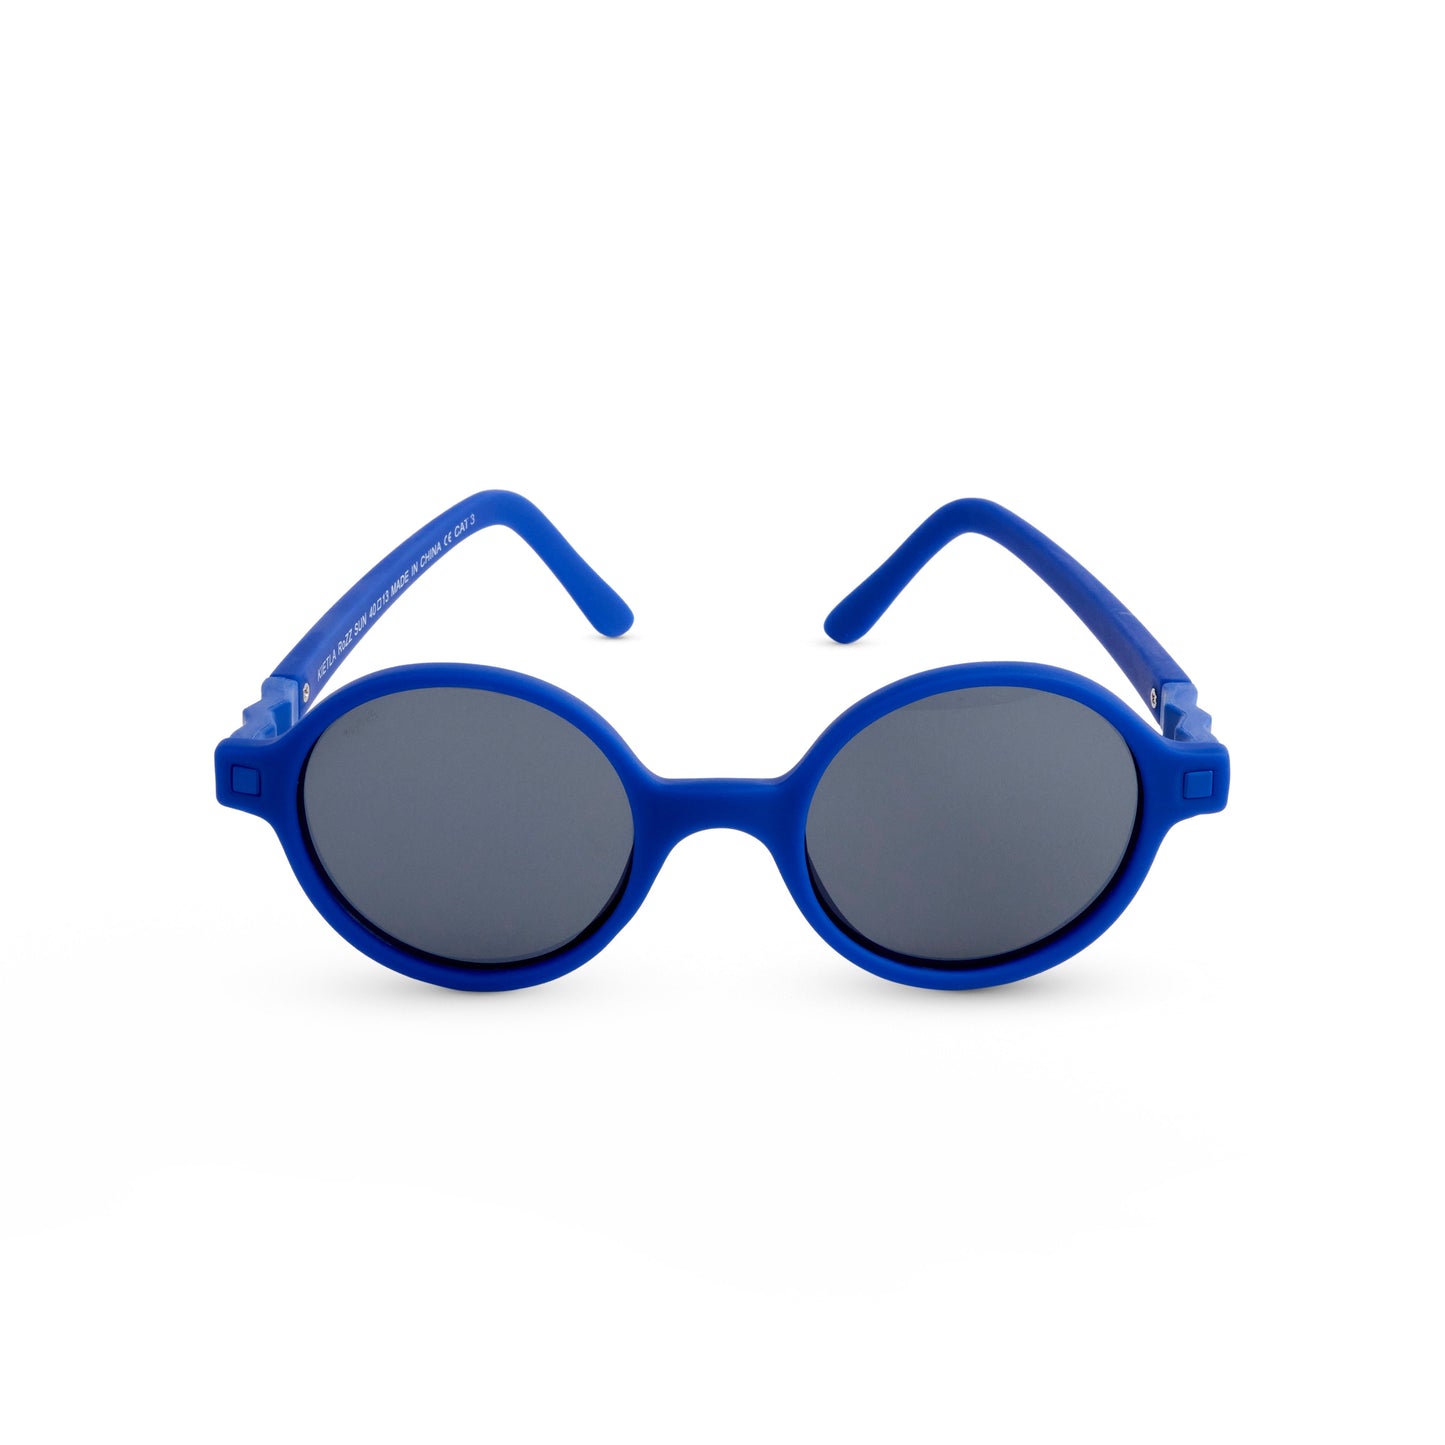 Okulary przeciwsłoneczne RoZZ 4-6 Reflex Blue Ki ET LA